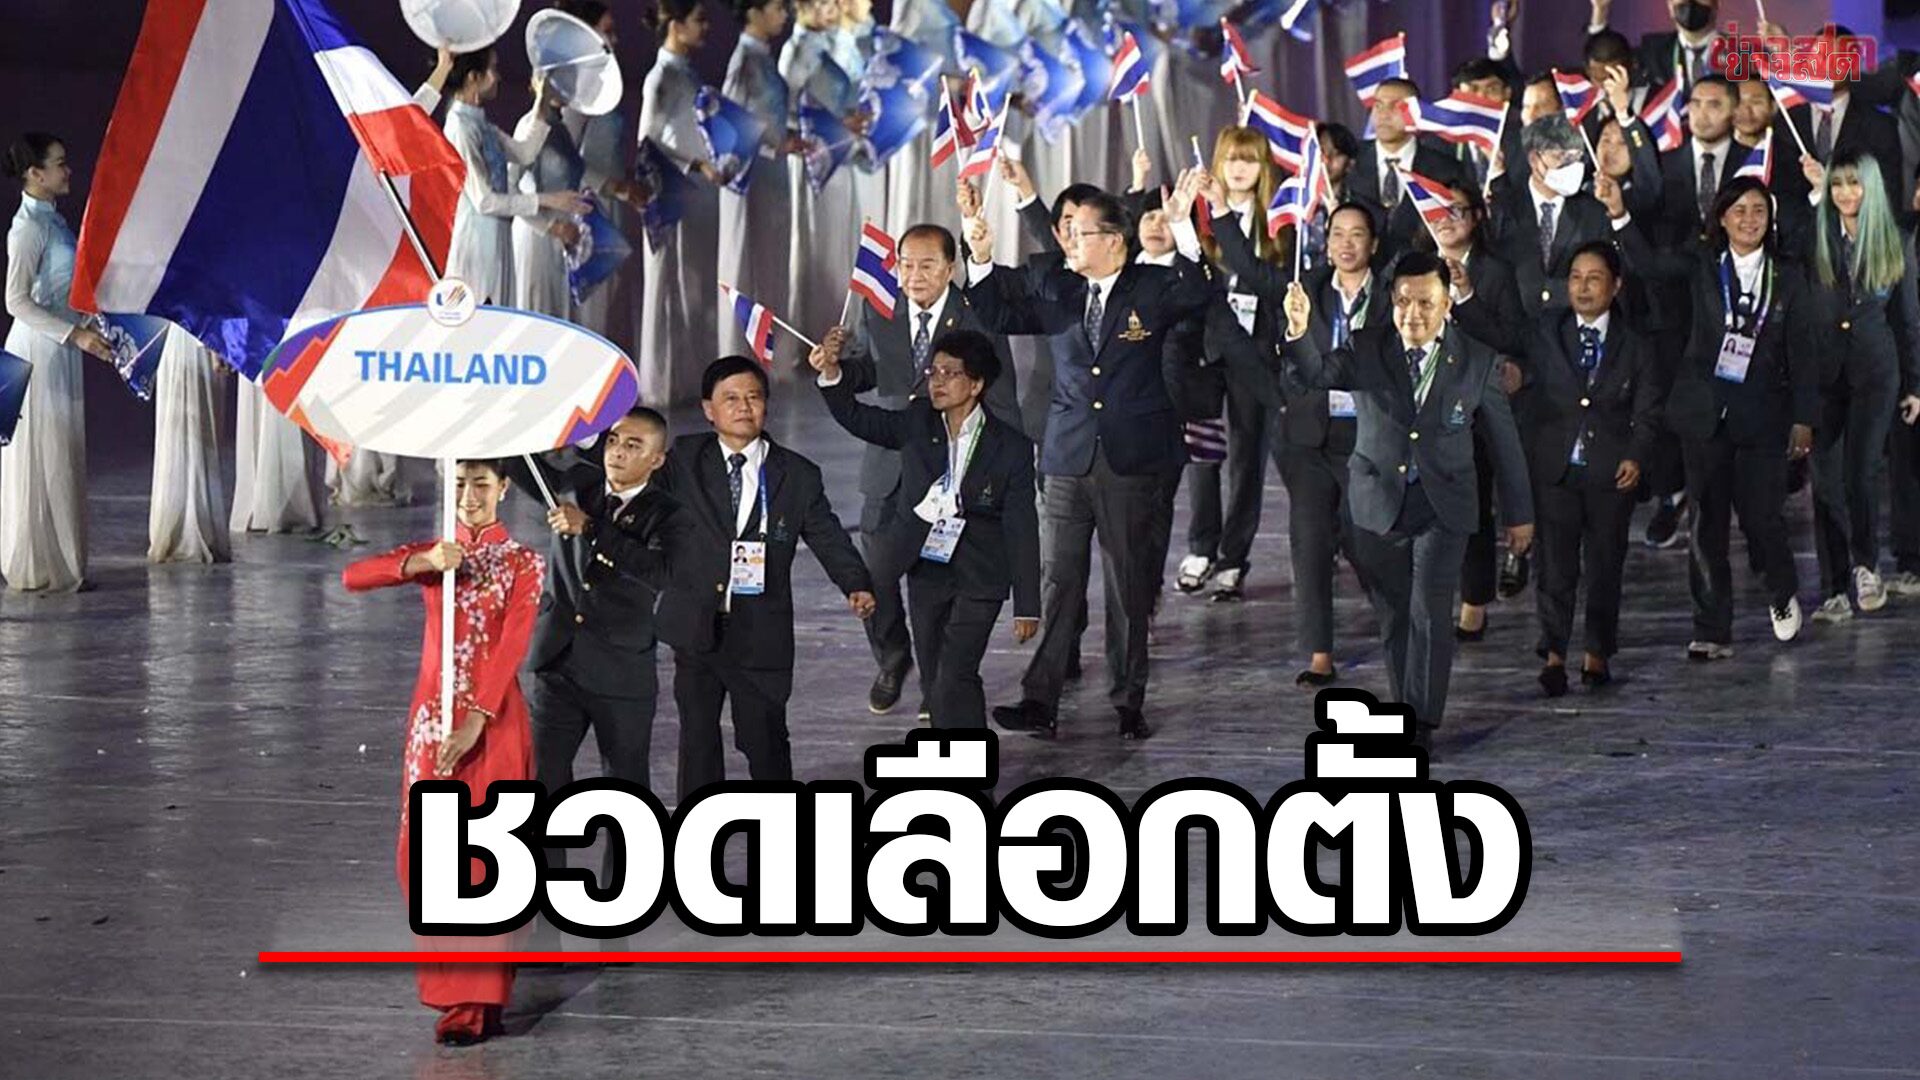 เวลาไม่เป็นใจ! ทัพนักกีฬาไทย บางส่วนส่อชวดเลือกตั้ง ติดลุยซีเกมส์